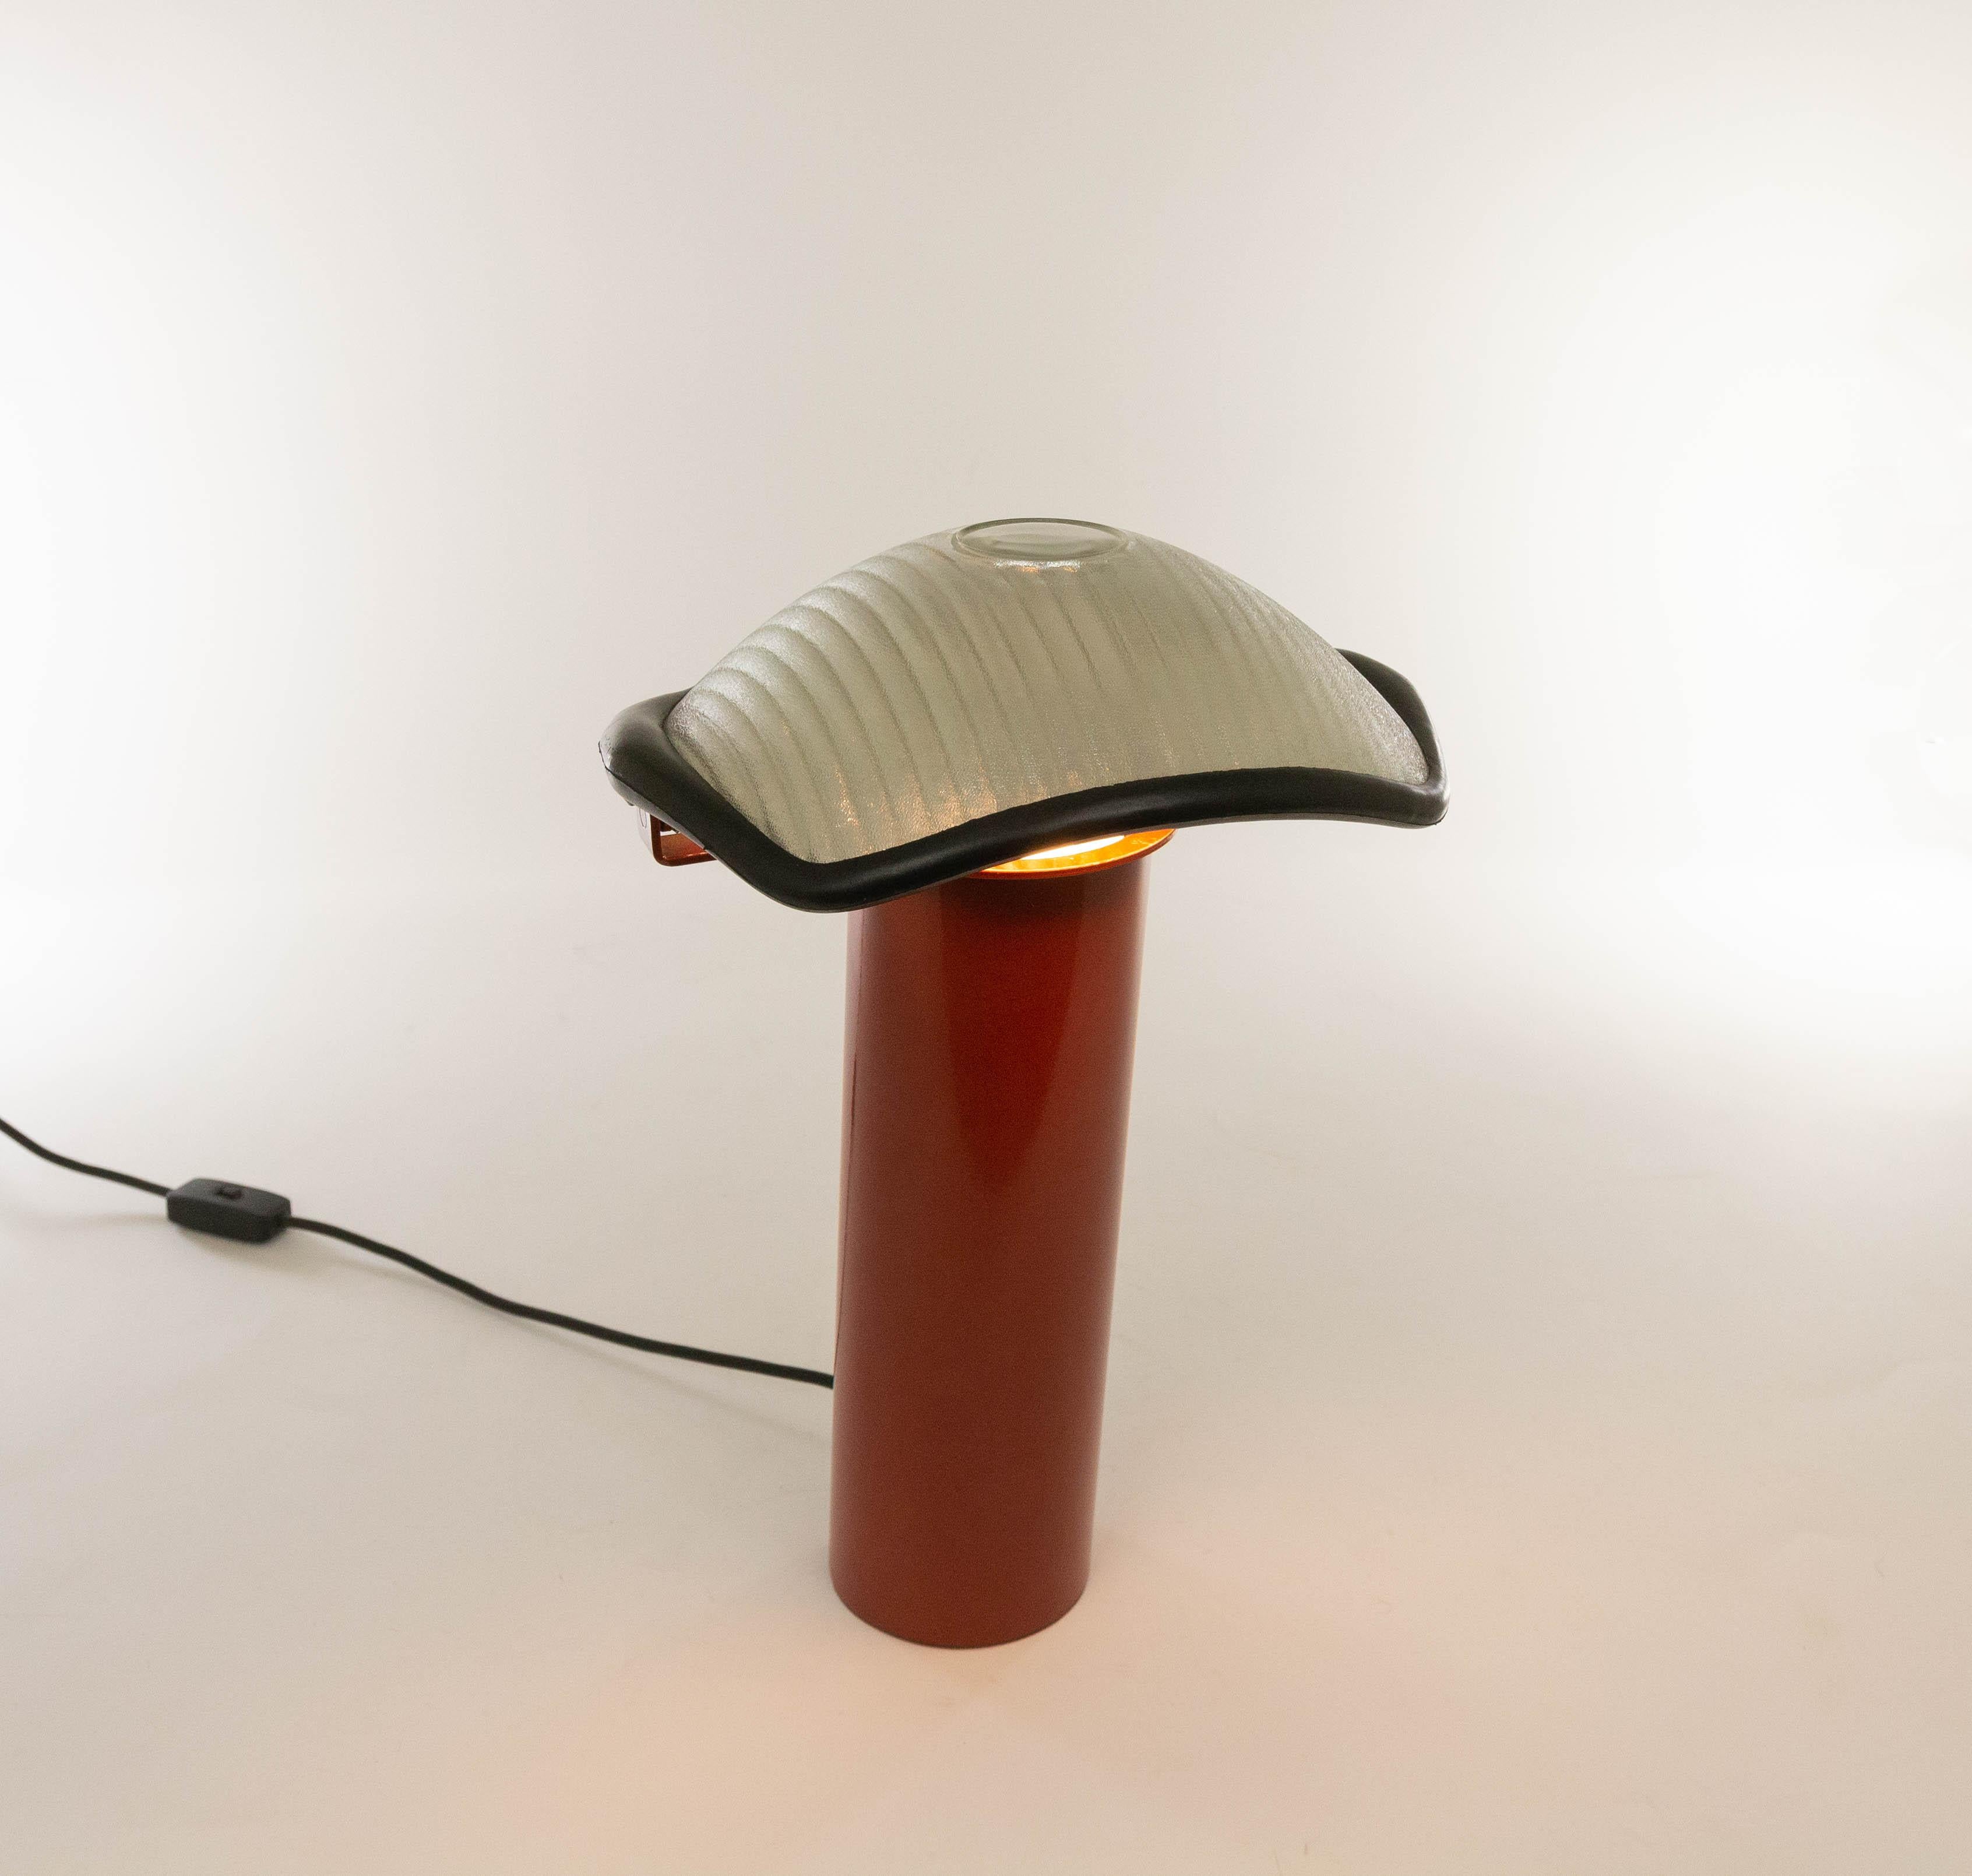 Eine außergewöhnliche Tischlampe Modell Brontes, entworfen von Cini Boeri und hergestellt von Artemide, 1981.

Das Modell besteht aus einem schweren, rot lackierten, zylindrischen Metallsockel und einem schwenkbaren Schirm mit Gummirand. Der